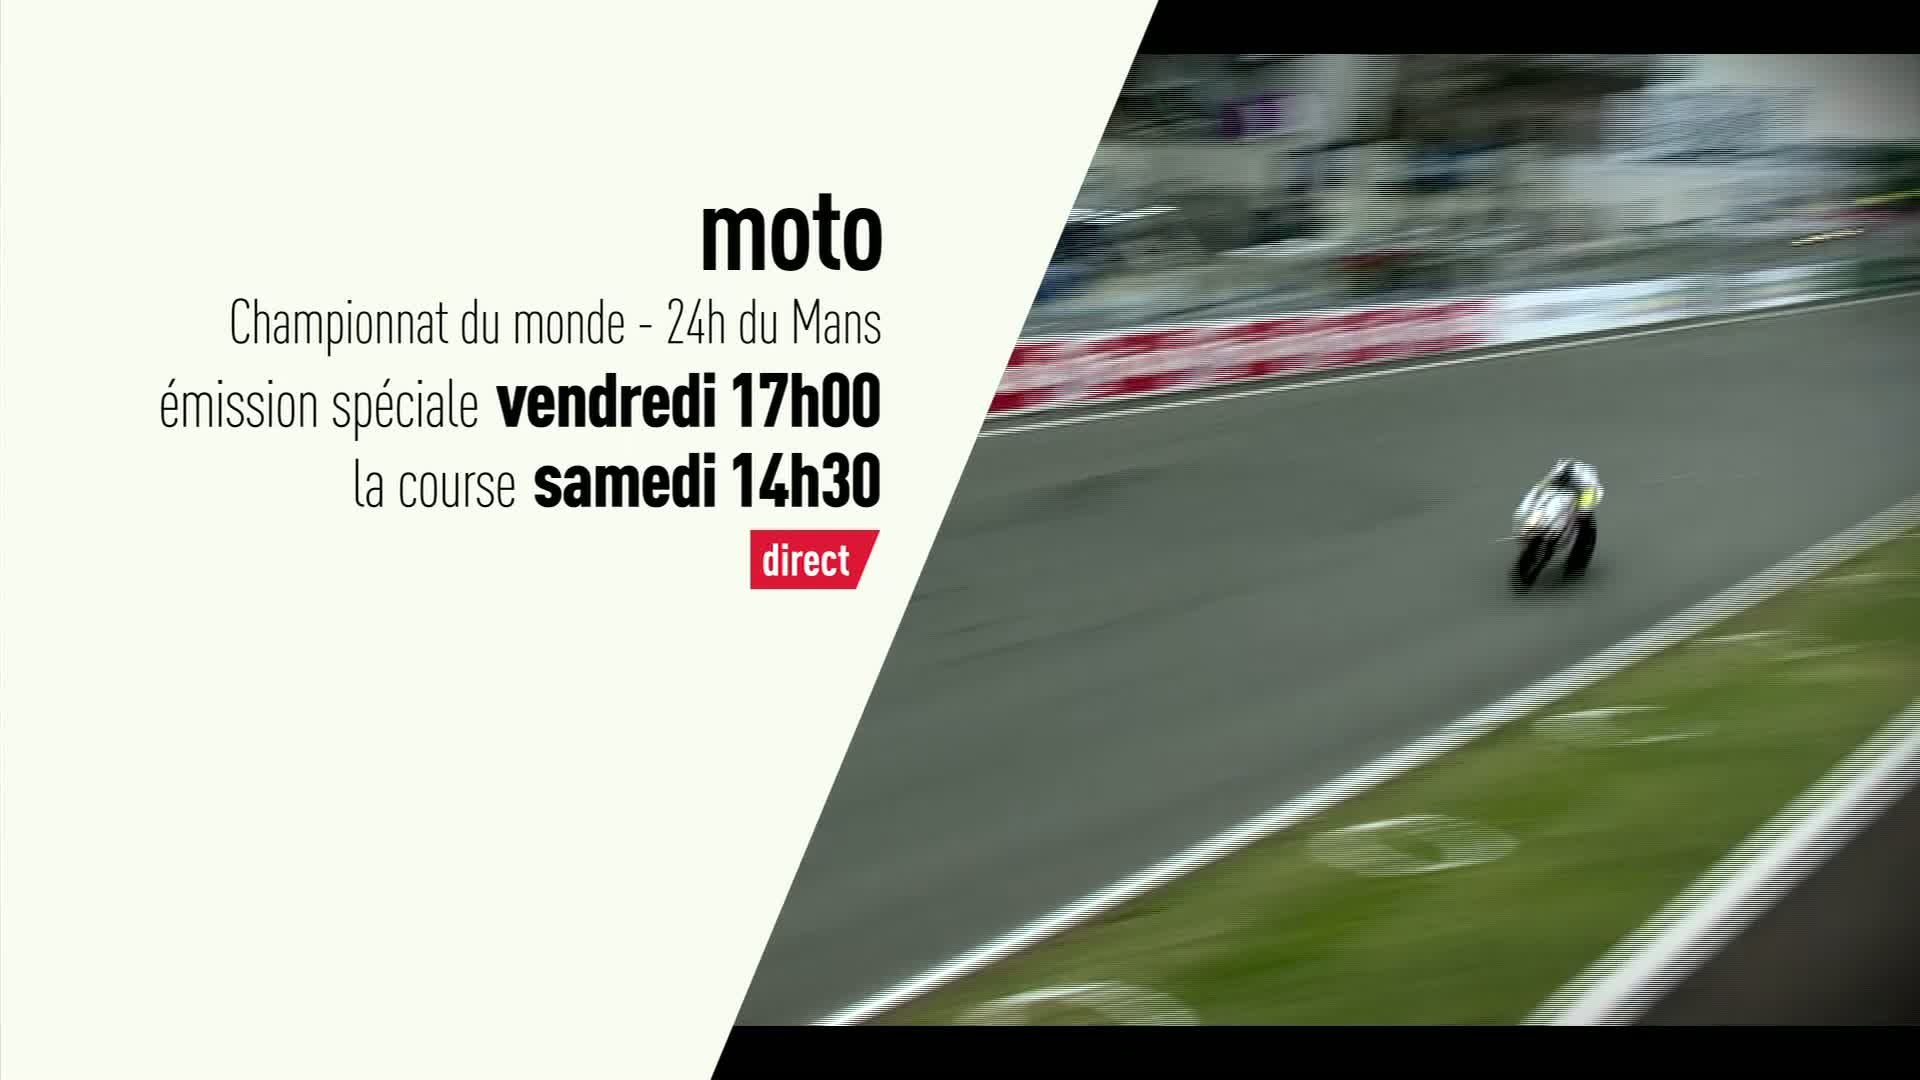 Moto - 24h du Mans Moto : 24h du Mans moto bande annonce - Vidéo Dailymotion